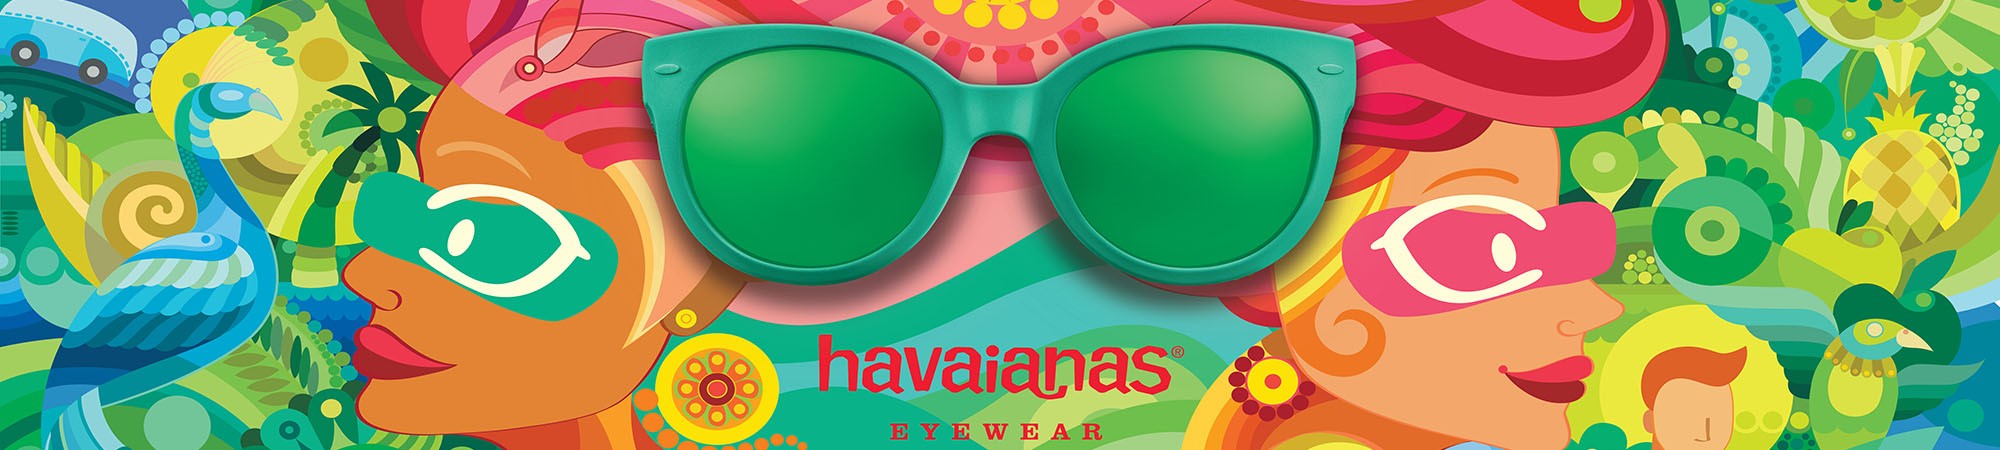 2021-03-Ottica-Pizzini-havaianas-modelli-occhiali-verdi